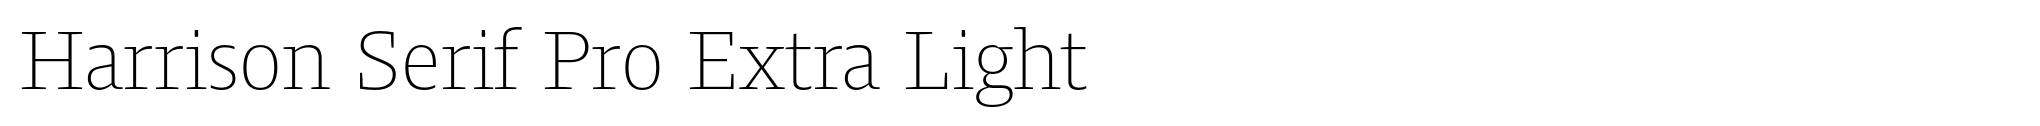 Harrison Serif Pro Extra Light image